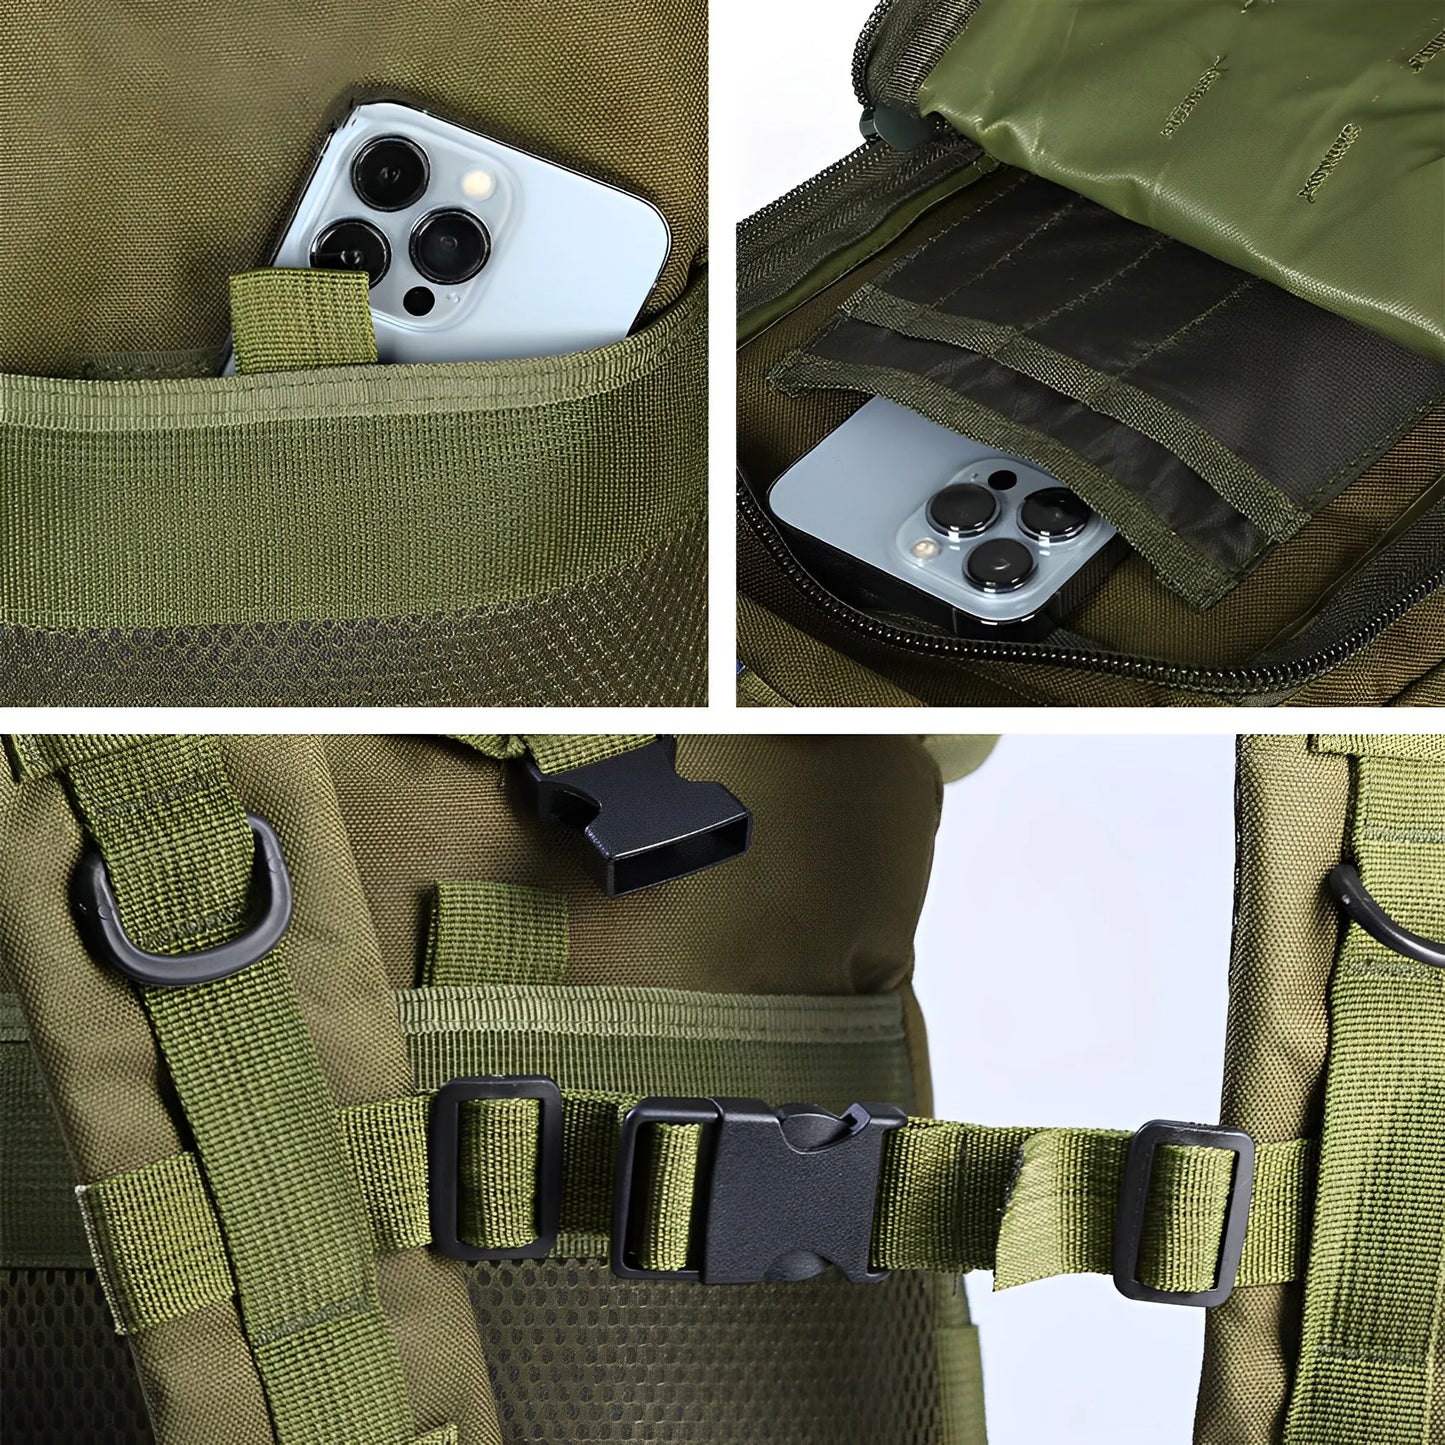 Syzm 50L of 30L Tactical Backpack Army Bag Hunting Molle Backpack voor mannen Outdoor Wandel Rucksack Visserszakken